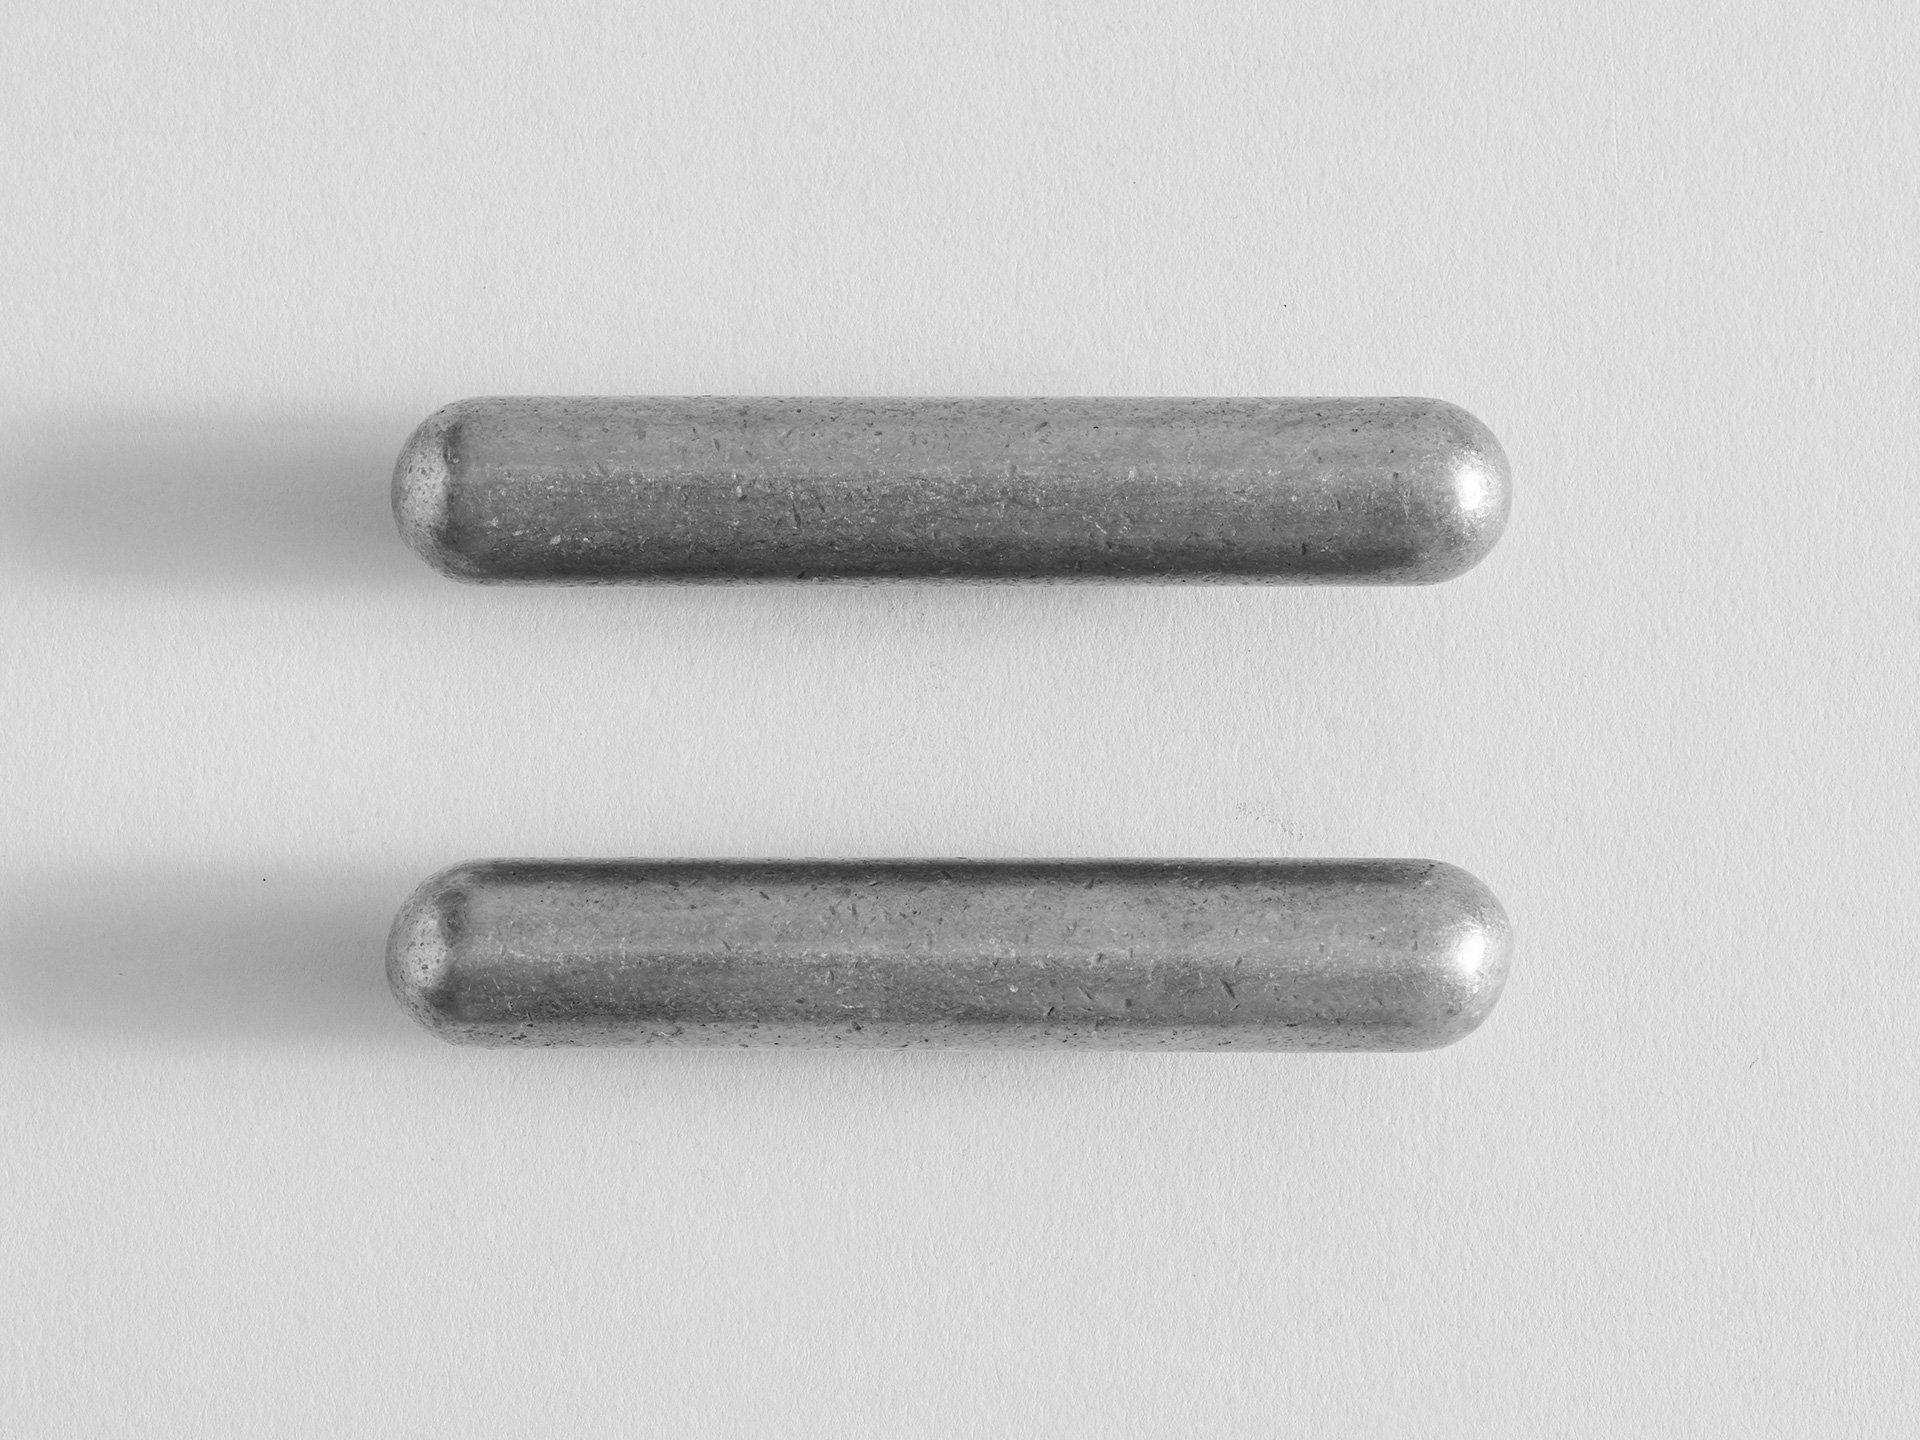 Set von 2 PSL-Griffen aus poliertem Aluminium von Henry Wilson
Abmessungen: B 2 x T 3 x H 9 cm 
MATERIALIEN: Aluminium 
Auch im XL-Format erhältlich: 20,5 x 2,6 x 1,6 cm
PSL-Griff (Ziehen, Schieben, Heben) 

Dieser vielseitige Griff kann für